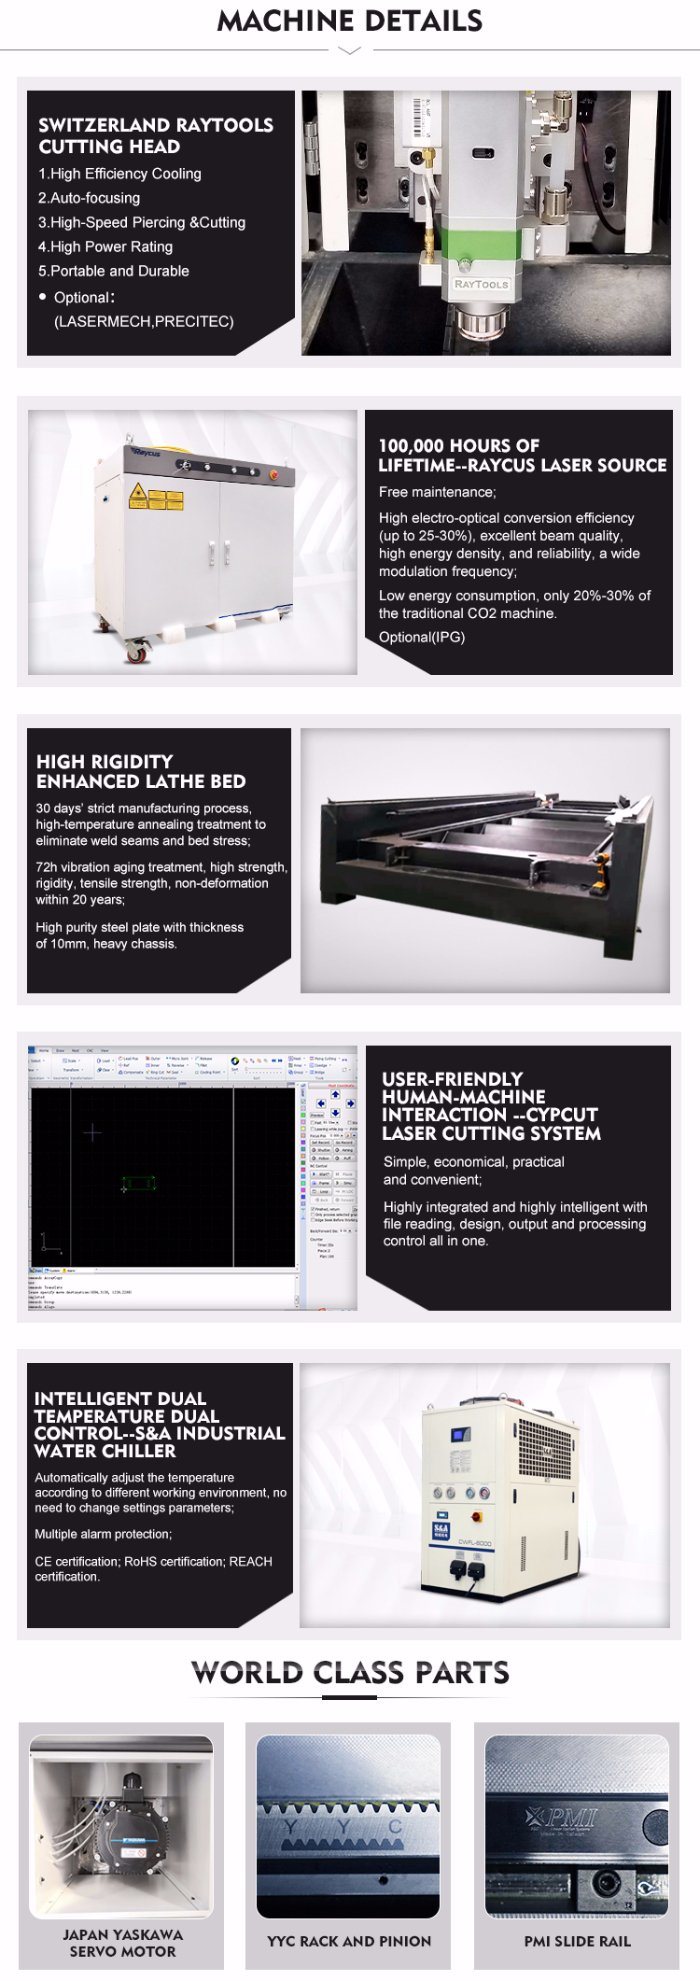 1kw/2kw/3kw Fiber Laser Cutting Machine//Metal Cutting Machine/CNC Machine/CNC Cutting Machine/Laser Cutter/Laser Cutting Machine for Metal